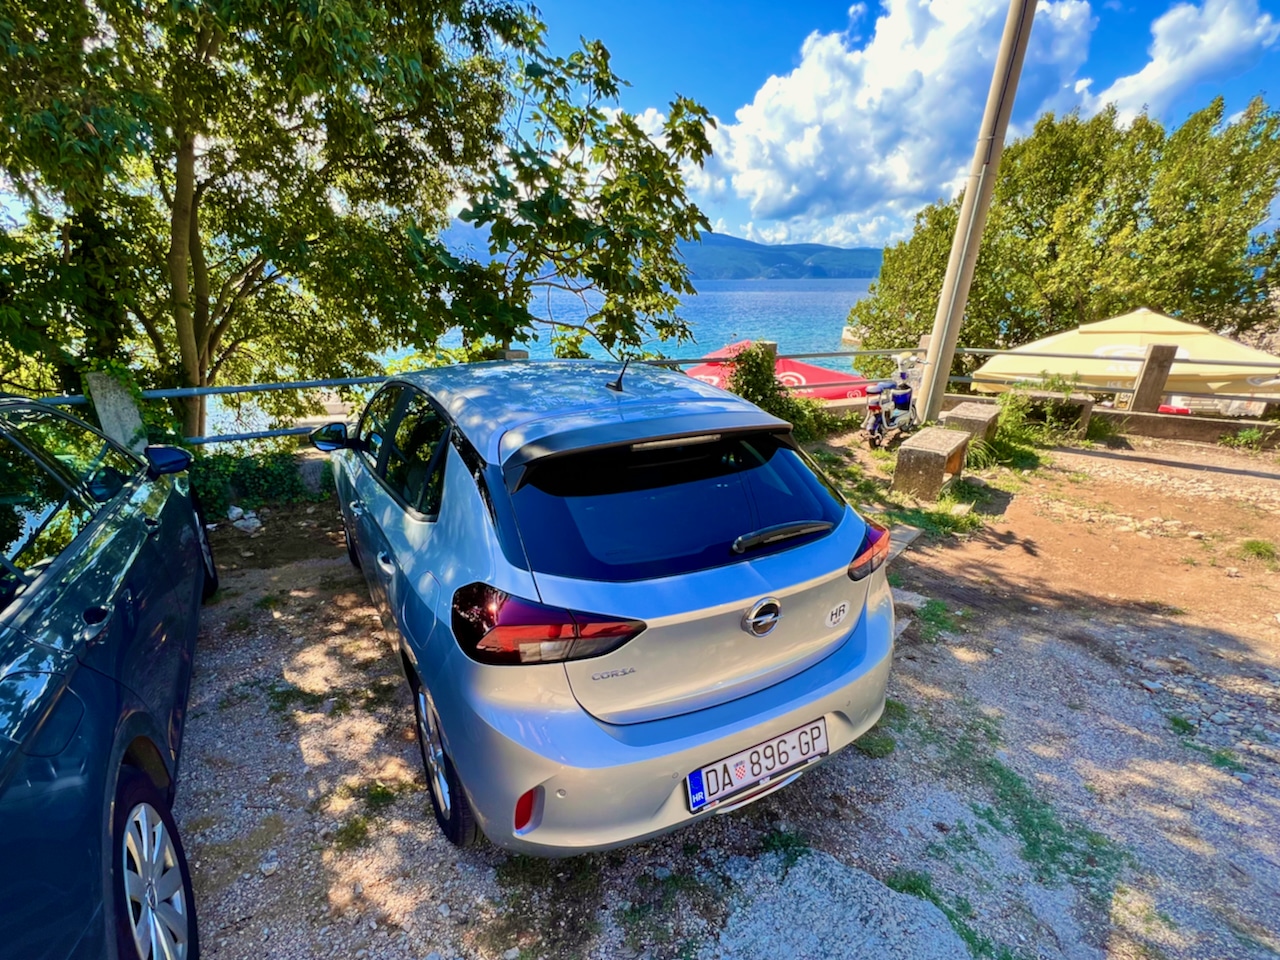 À Glavotok, vous pouvez, avec un peu de chance, obtenir une place de parking gratuite directement sur la plage. Photo: Sascha Tegtmeyer Rapport d'expérience de location de voiture à Krk - itinéraires en voiture sur l'île